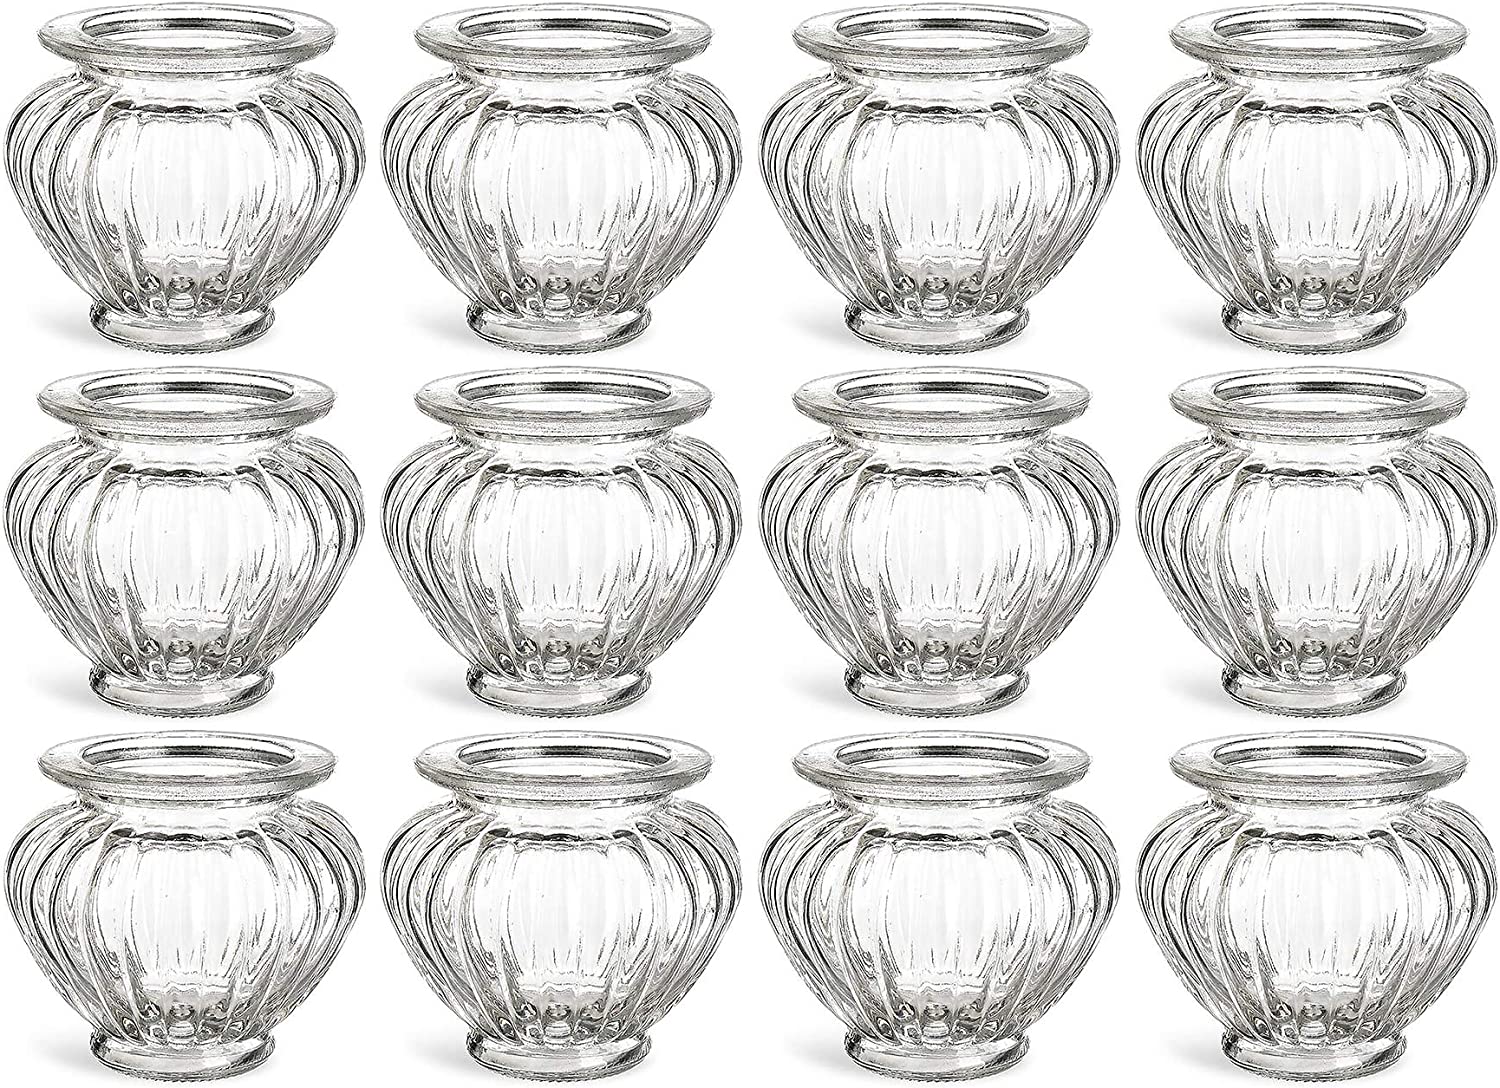 Annastore 12 x Tea Light Holders Made of Glass in Vintage Look, Height 9 cm, Bulky - Tea Light Glasses (12 Glasses + Taffeta Ribbon in Cream)